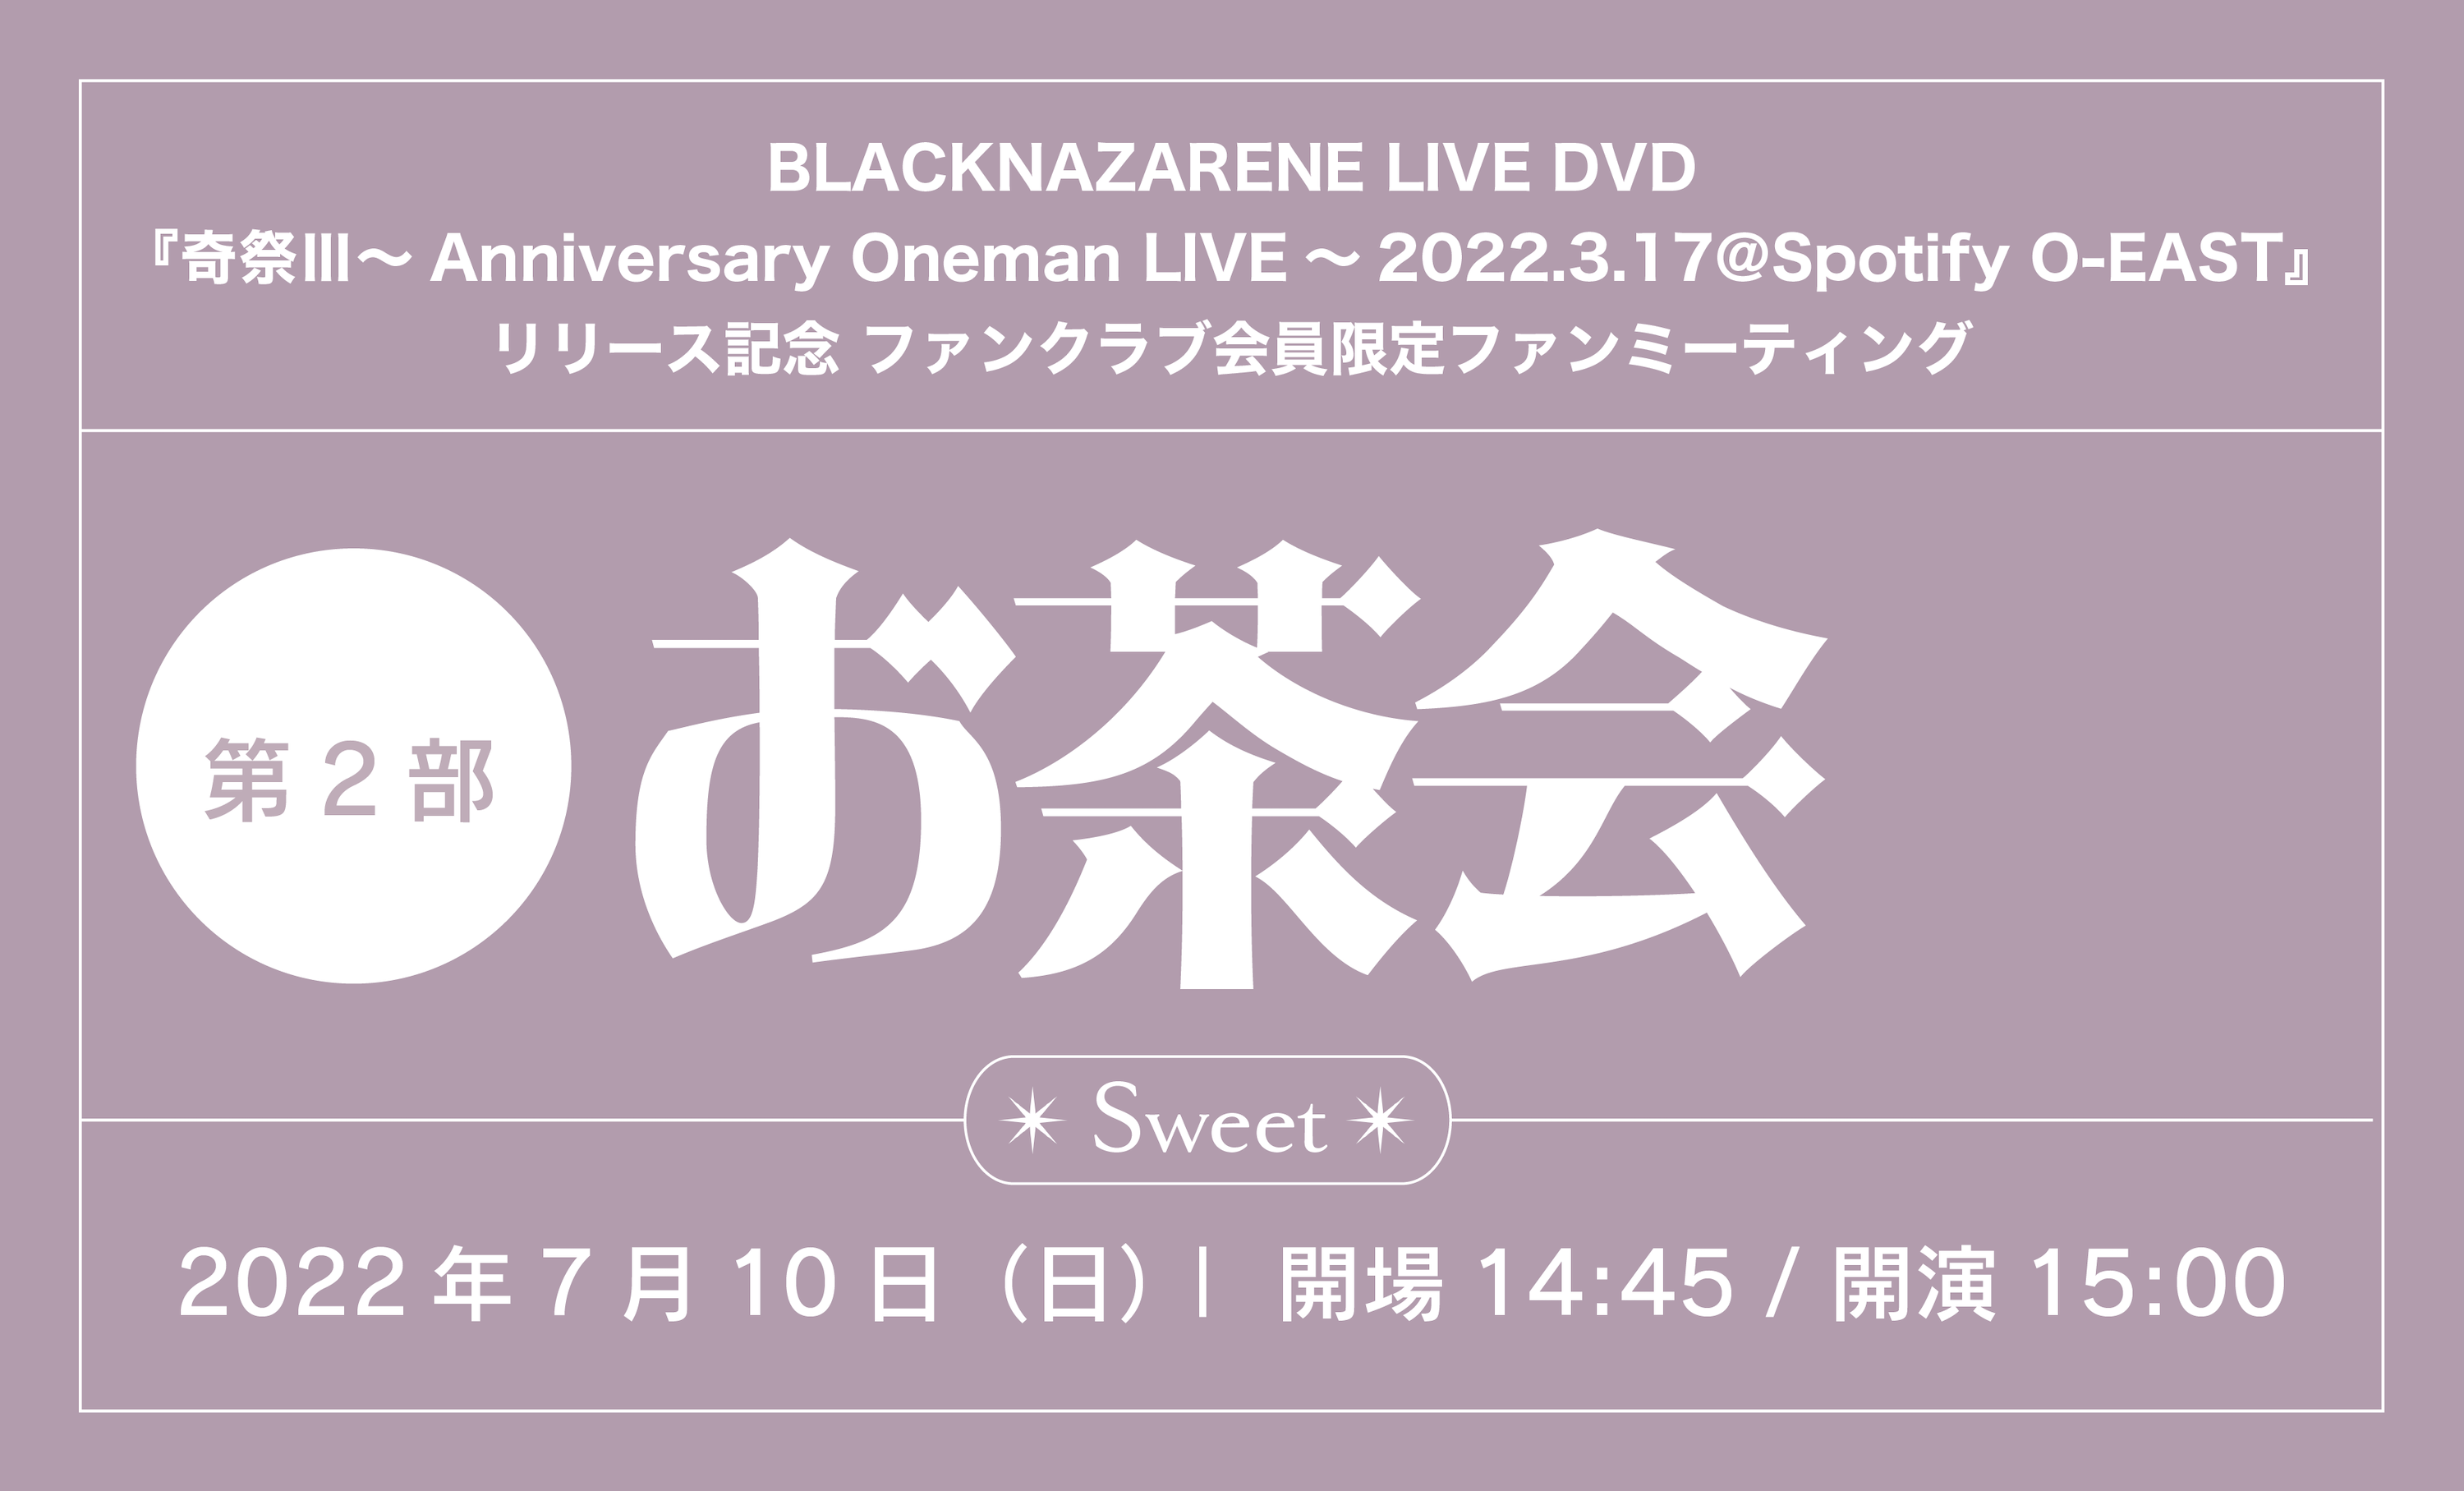 【先着】Fan's会員限定 DVD『奇祭Ⅲ～Anniversary Oneman LIVE～2022.3.17@Spotify O-EAST』ファンクラブ会員限定ファンミーティング「お茶会 第2部～Sweet～」